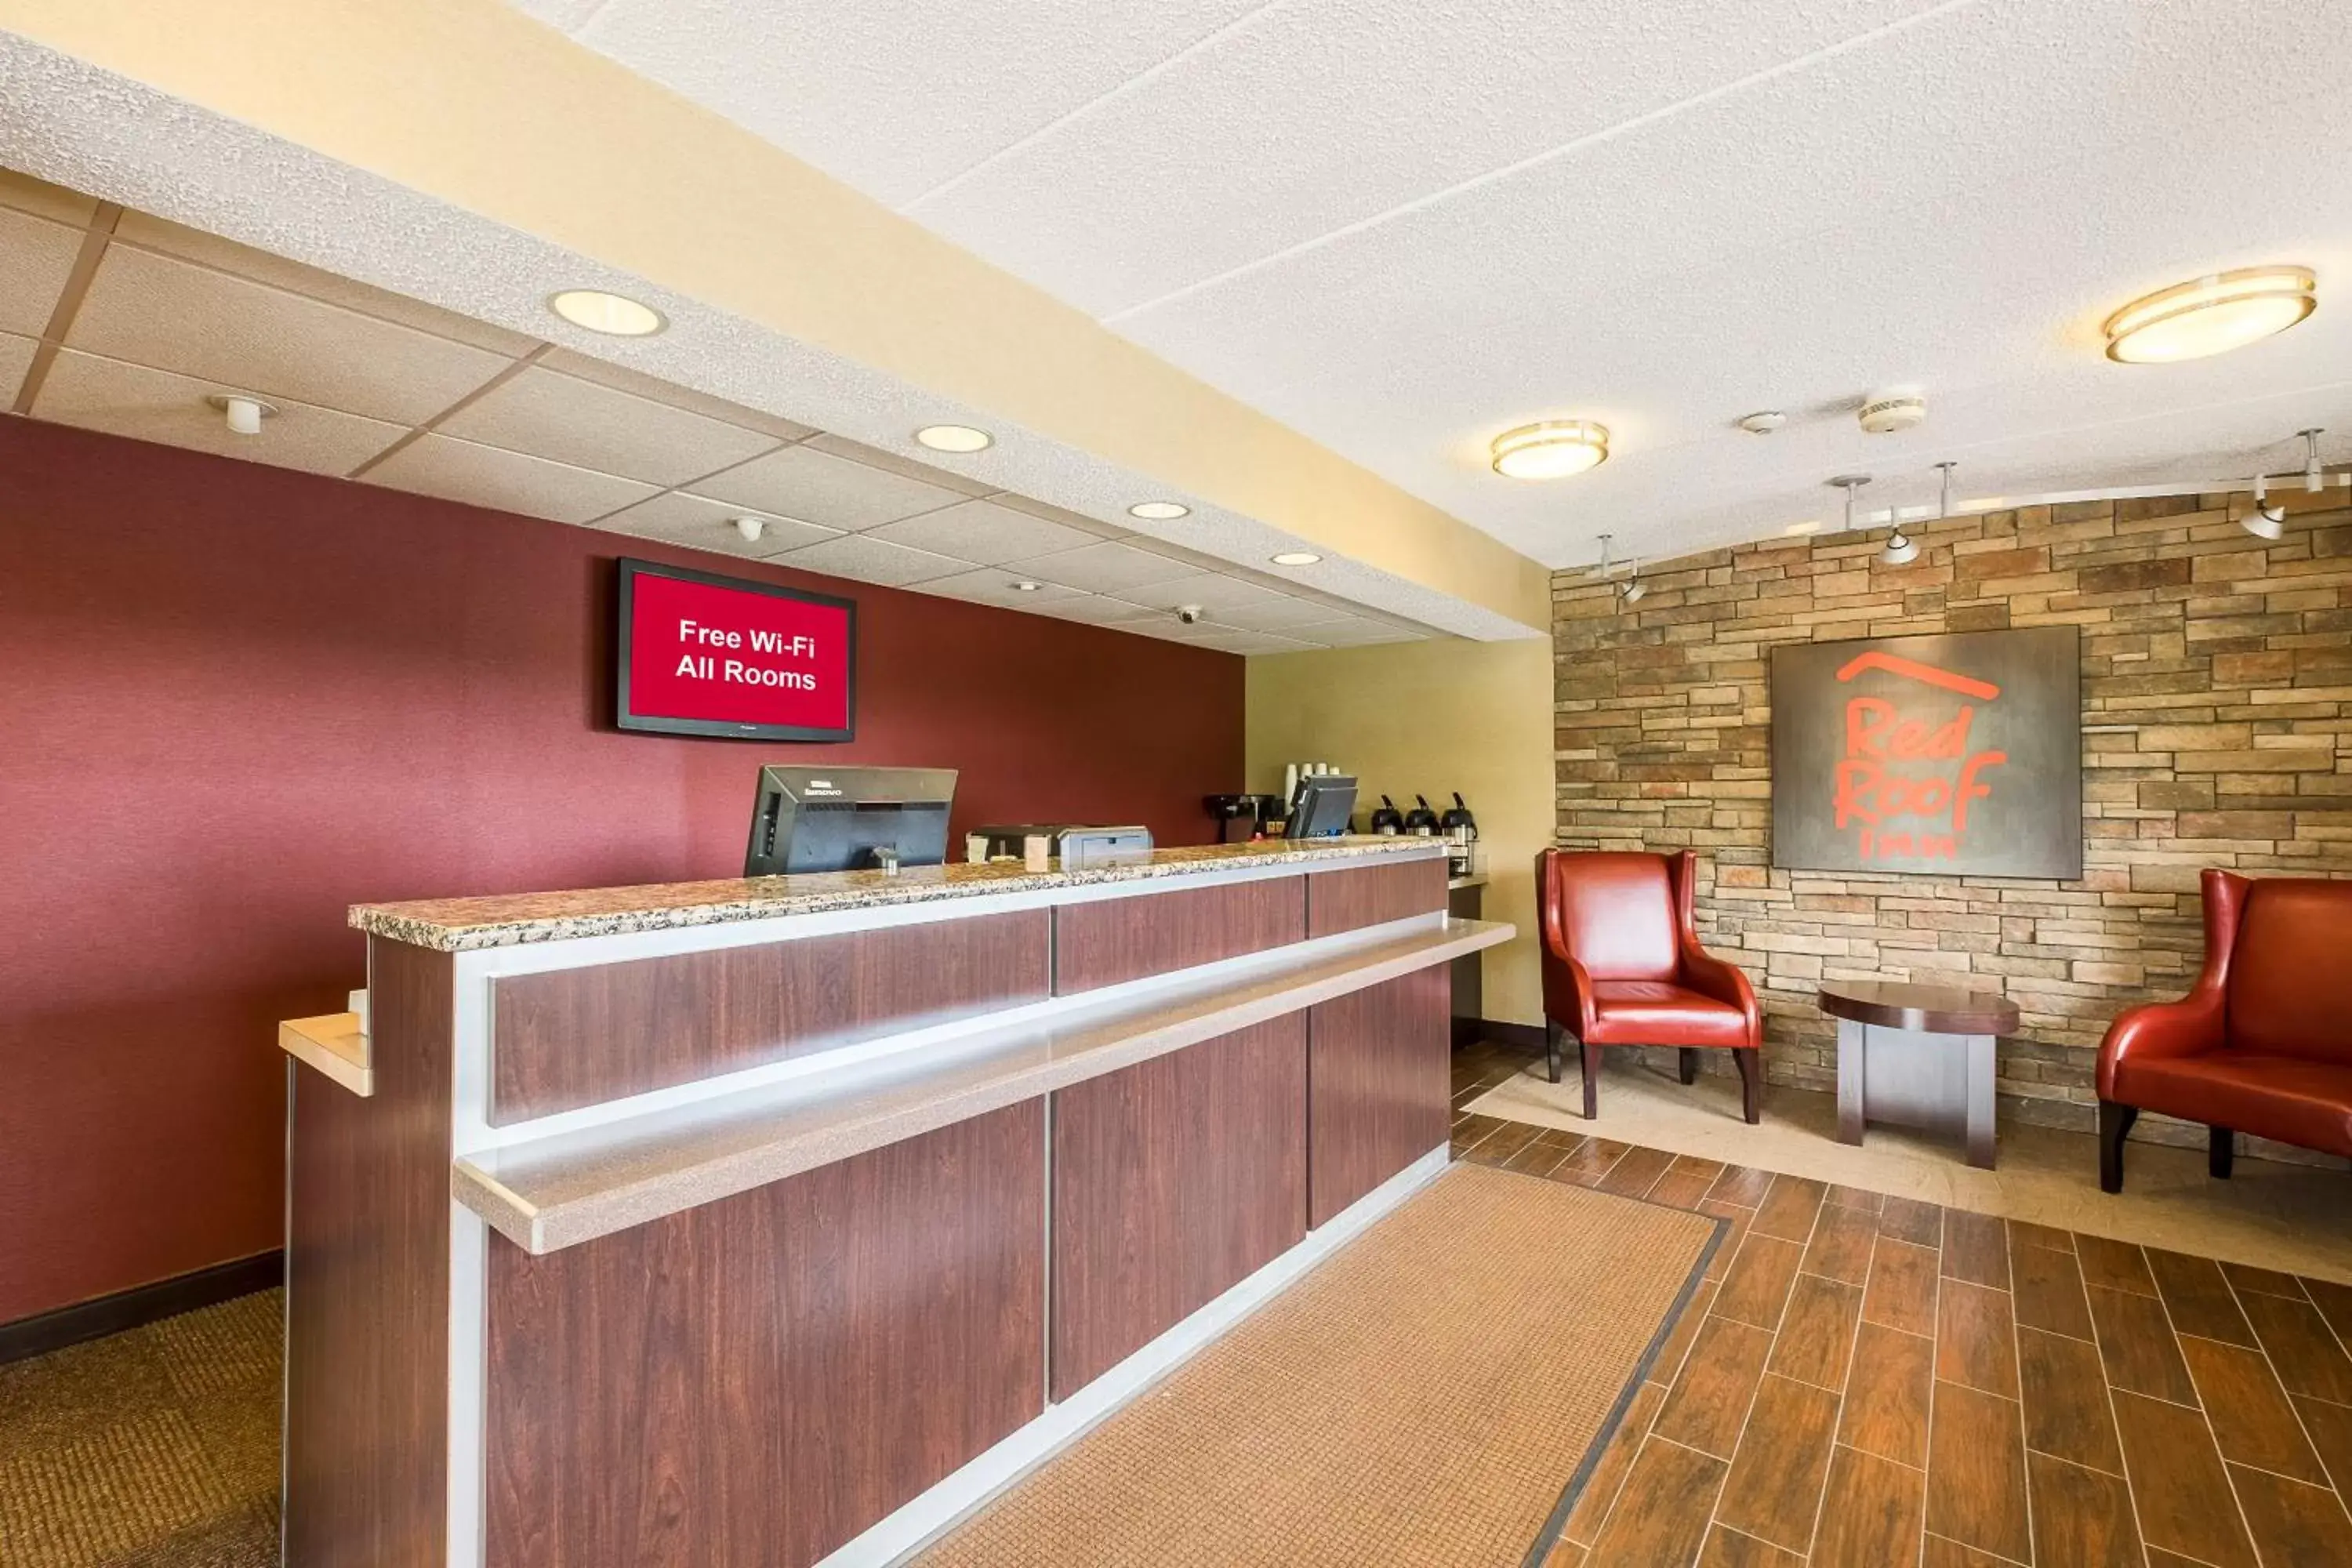 Lobby or reception, Lobby/Reception in Red Roof Inn Hilton Head Island